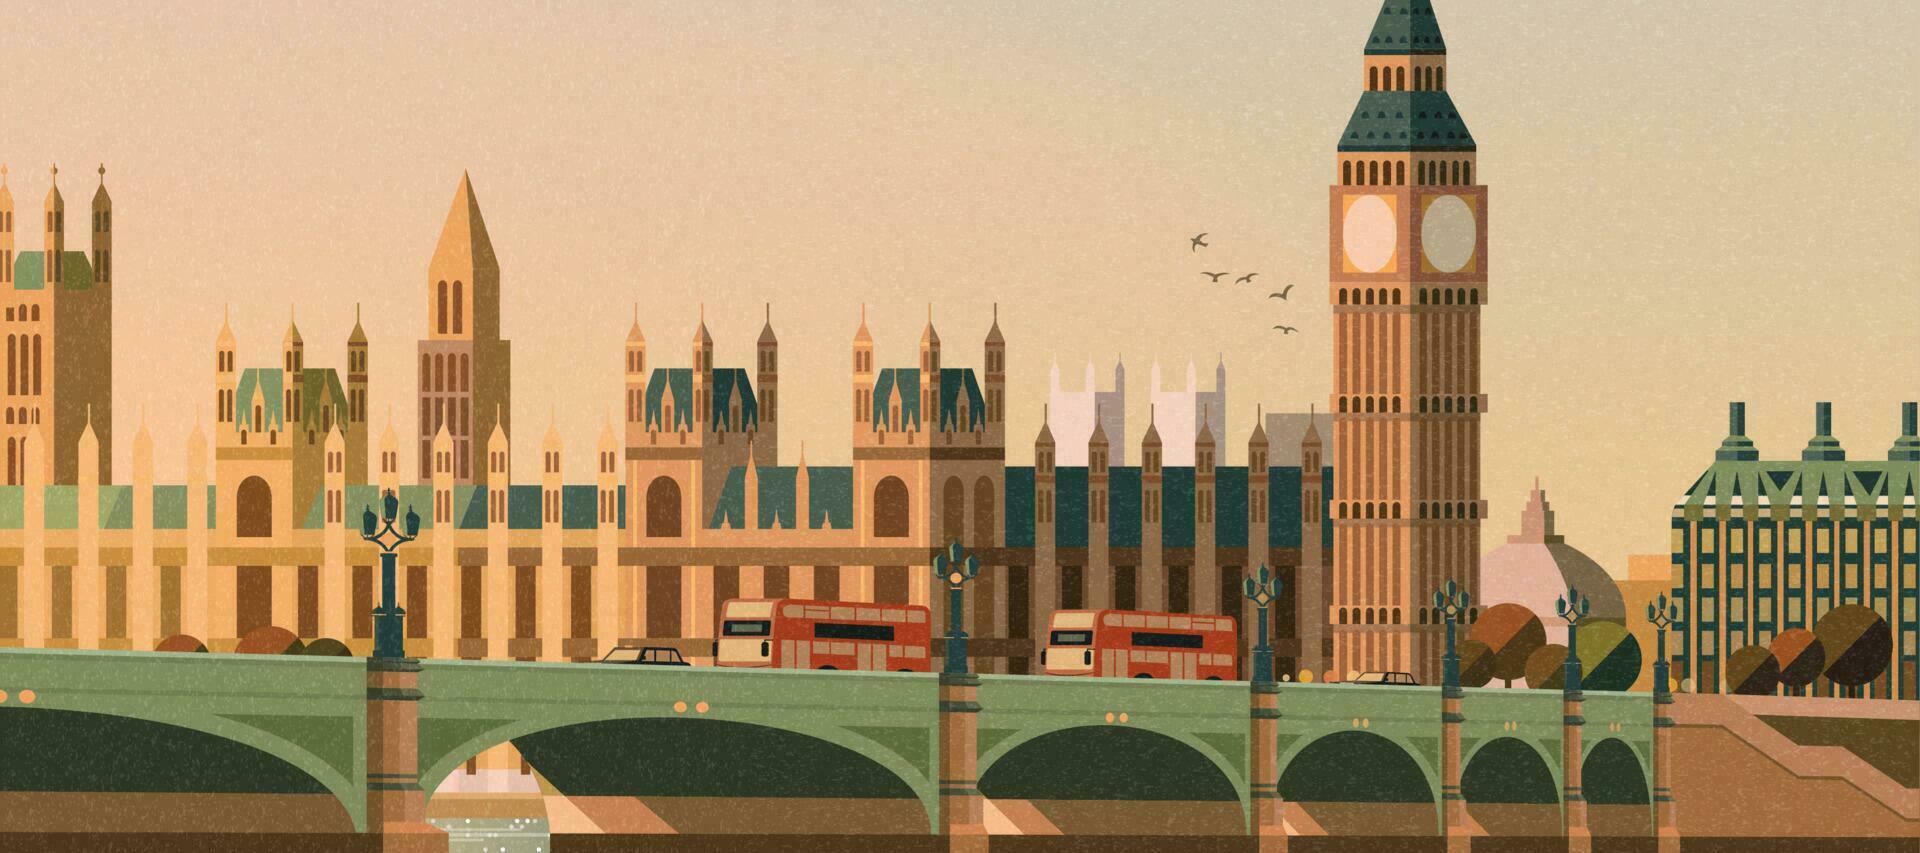 gros ben et Westminster pont scène dans plat style vecteur